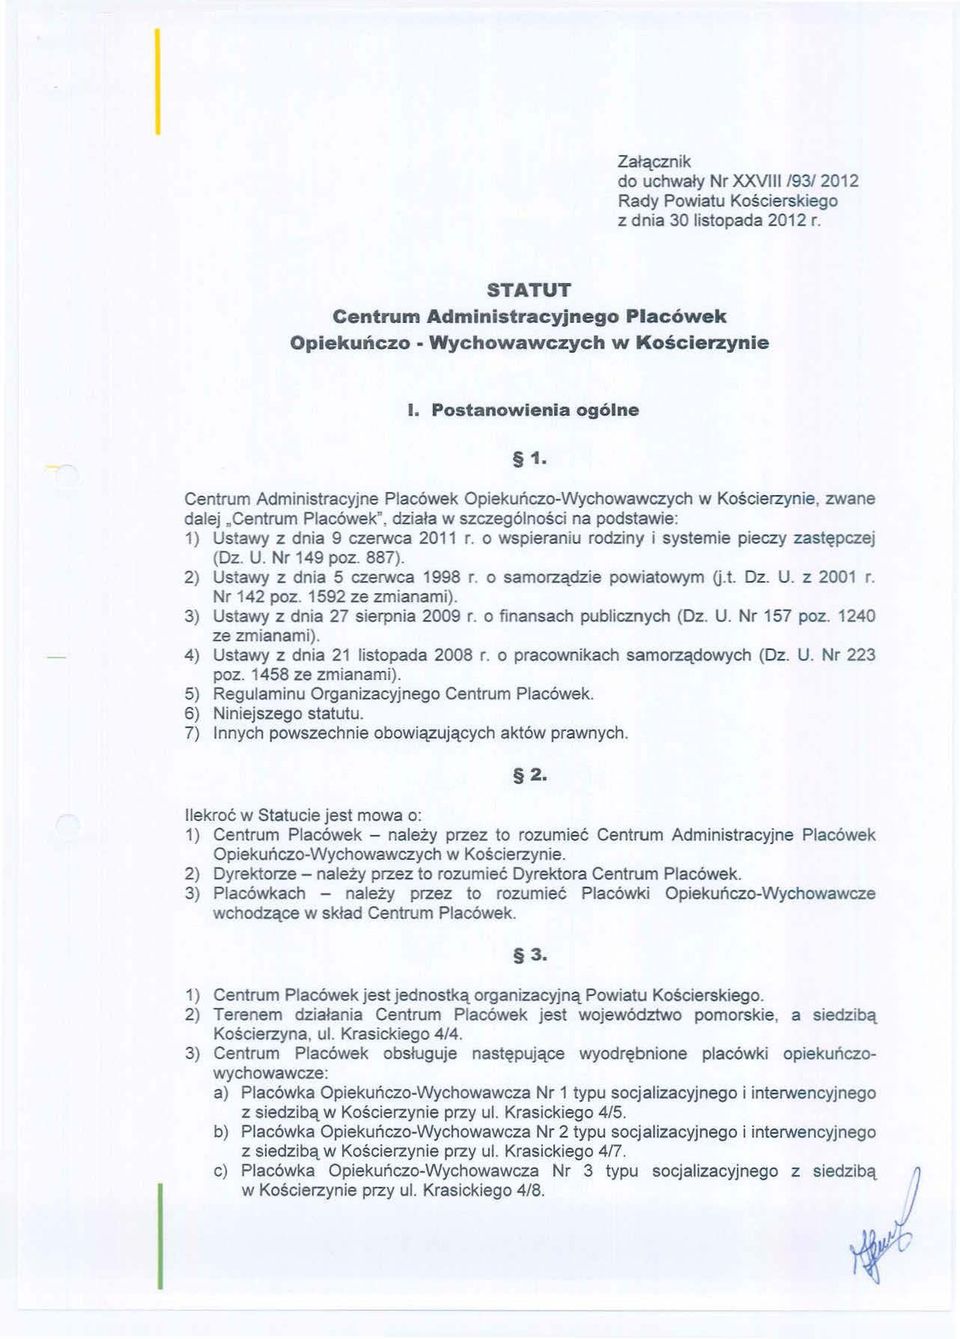 Centrum Administracyjne Placówek Opiekuńczo-Wychowawczych w Kościerzynie, zwane dalej "Centrum Placówek", działa w szczególności na podstawie: 1) Ustawy z dnia 9 czerwca 2011 r.